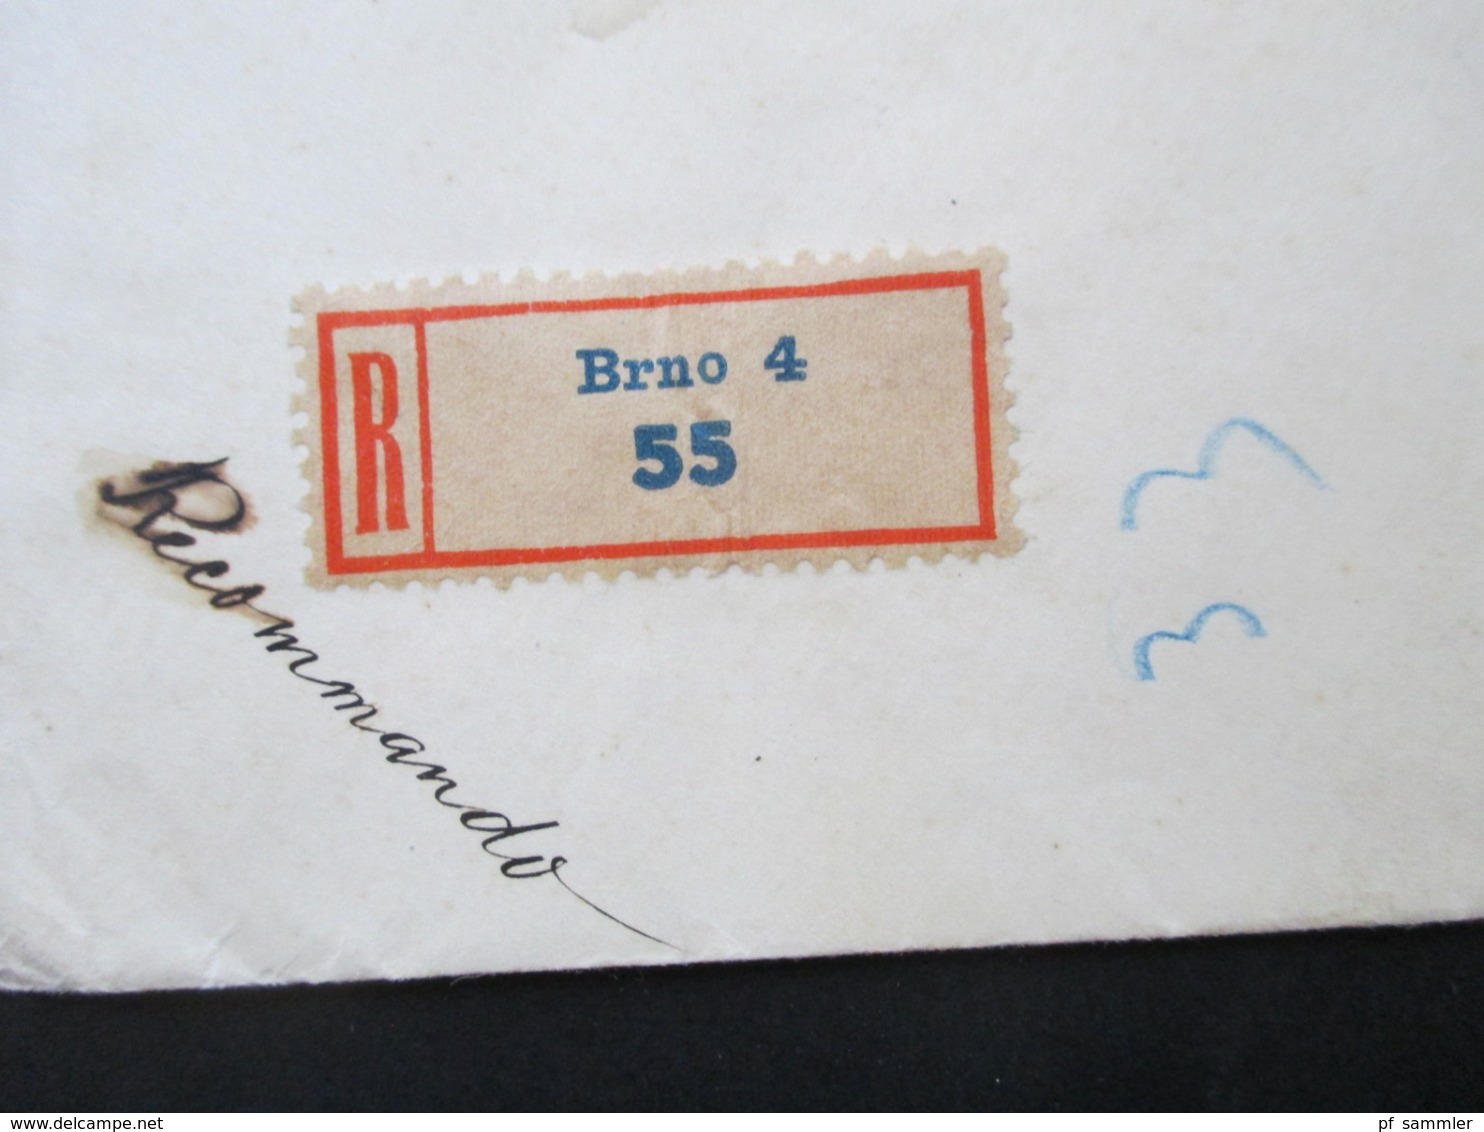 CSSR 14.12.1938 Einschreiben Recommando Brno 4 - Mährisch Trübau Mit Ak Stempel - Covers & Documents